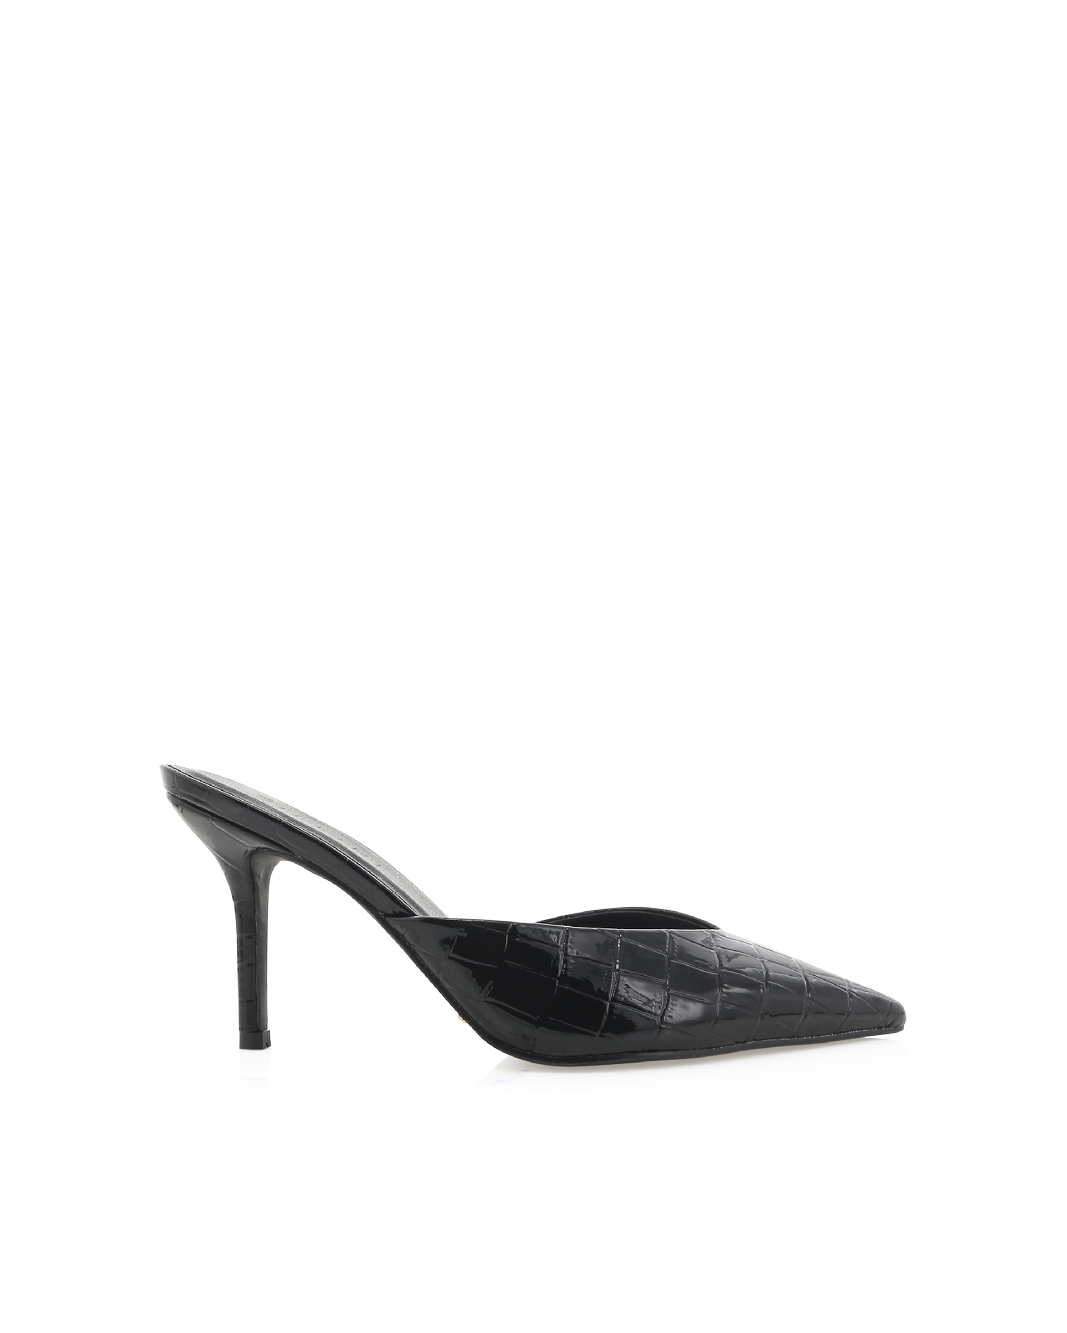 KAREY - BLACK PATENT CROC-Heels-Billini-Billini